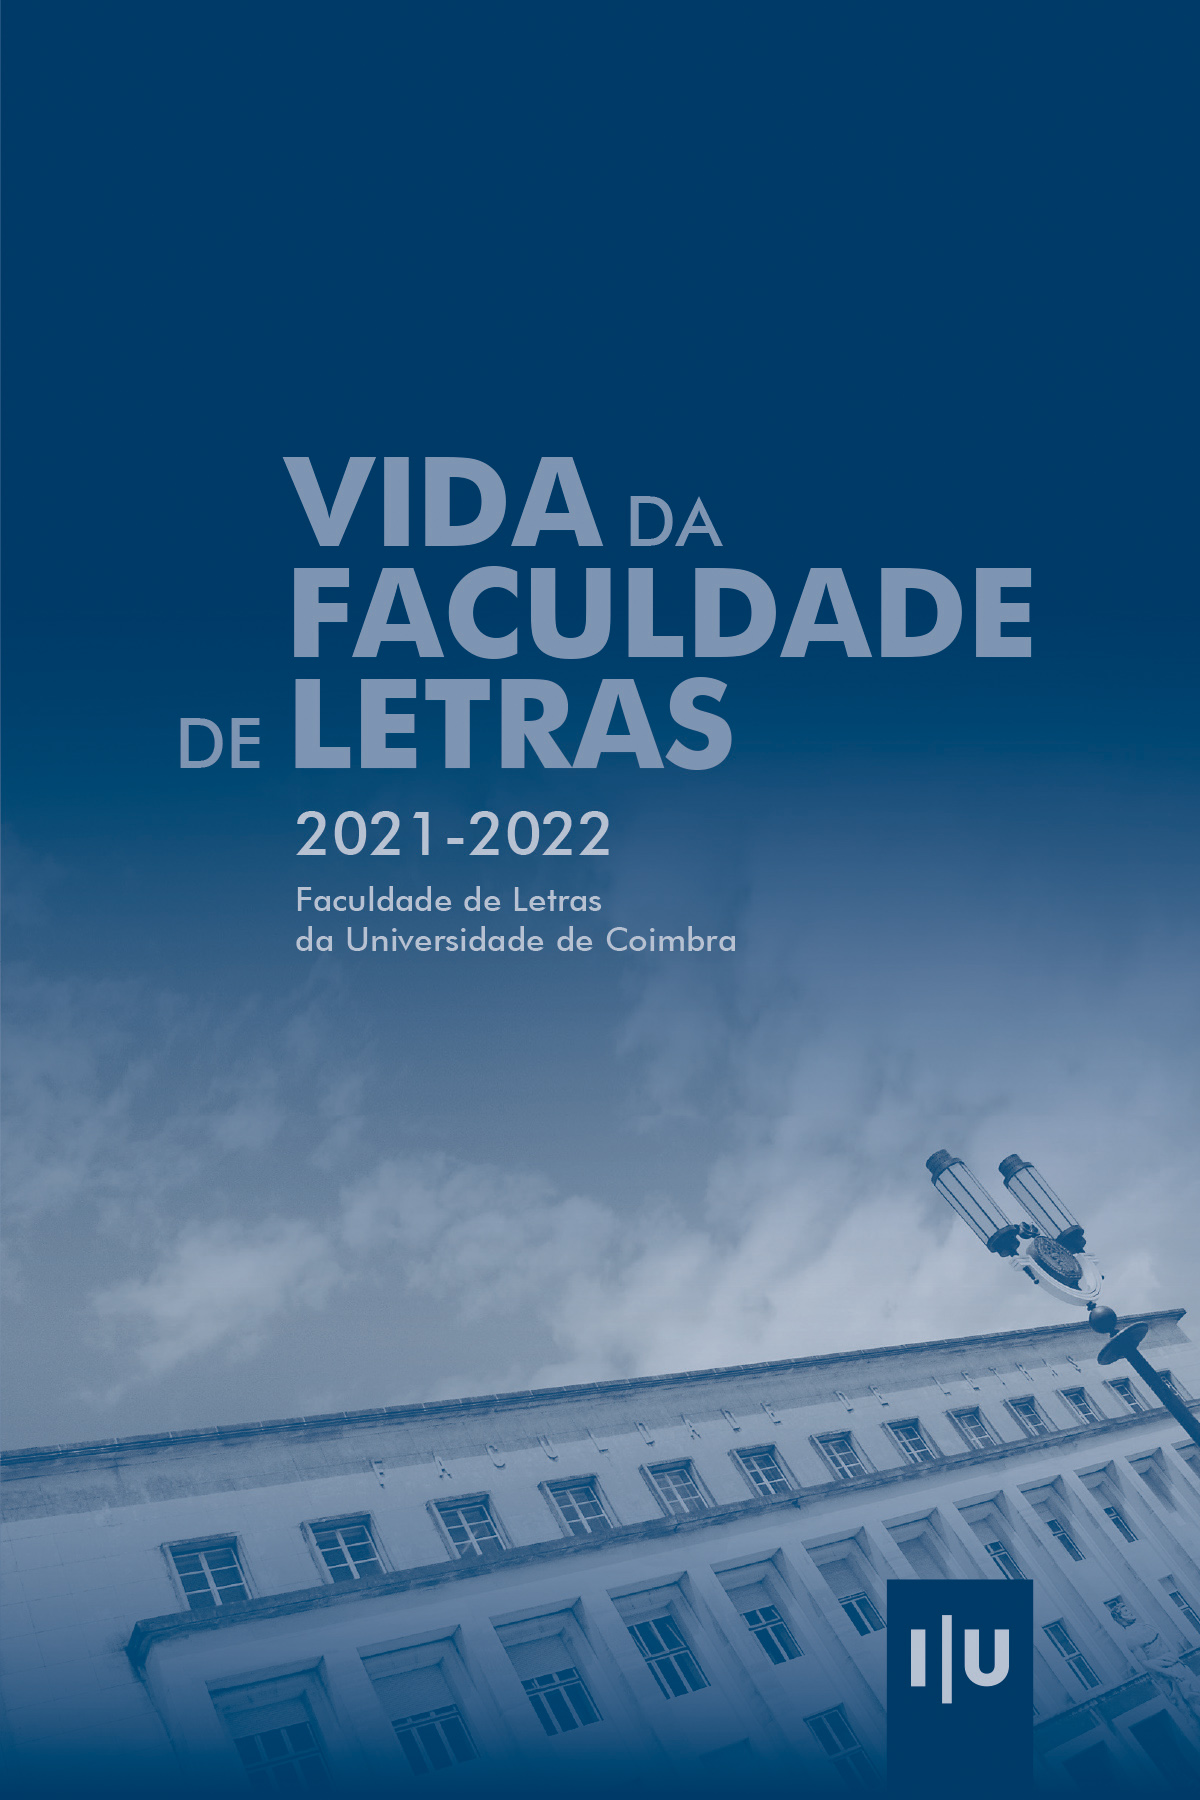 Vida da Faculdade de Letras 2021-2022 - Imprensa da Universidade de Coimbra (IUC)